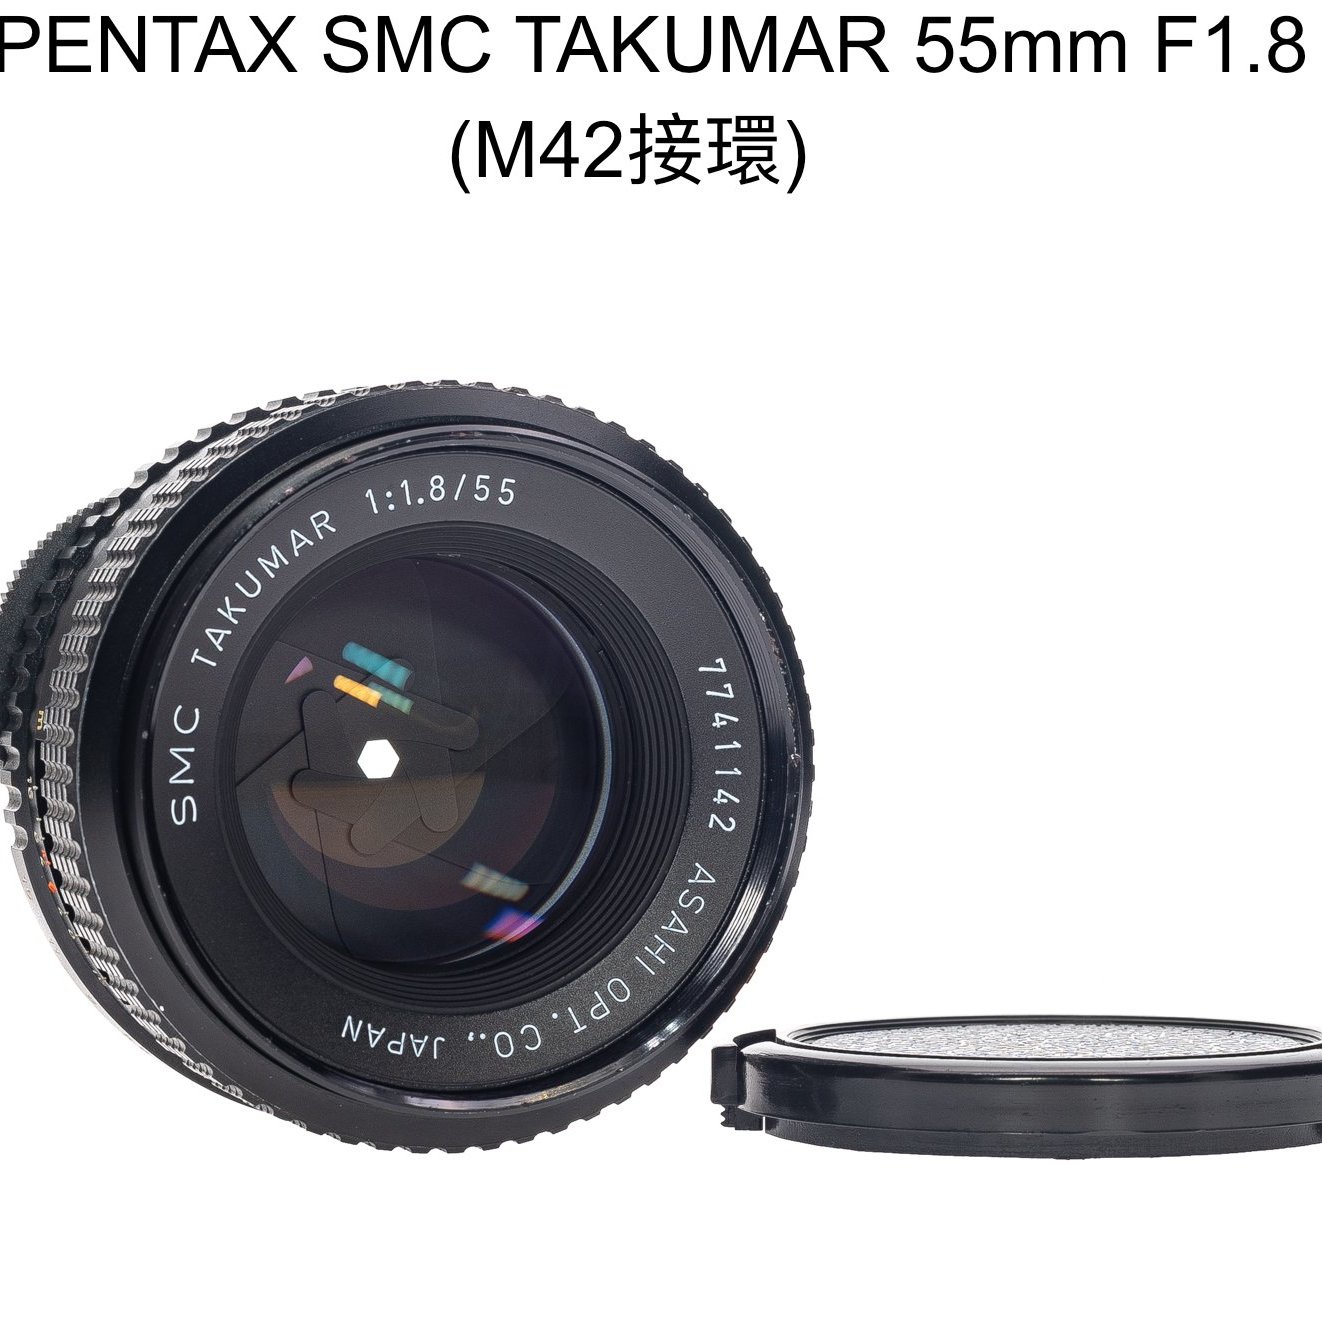 SMC Takumar 55mm F1.8 35mm F3.5 2点 L340